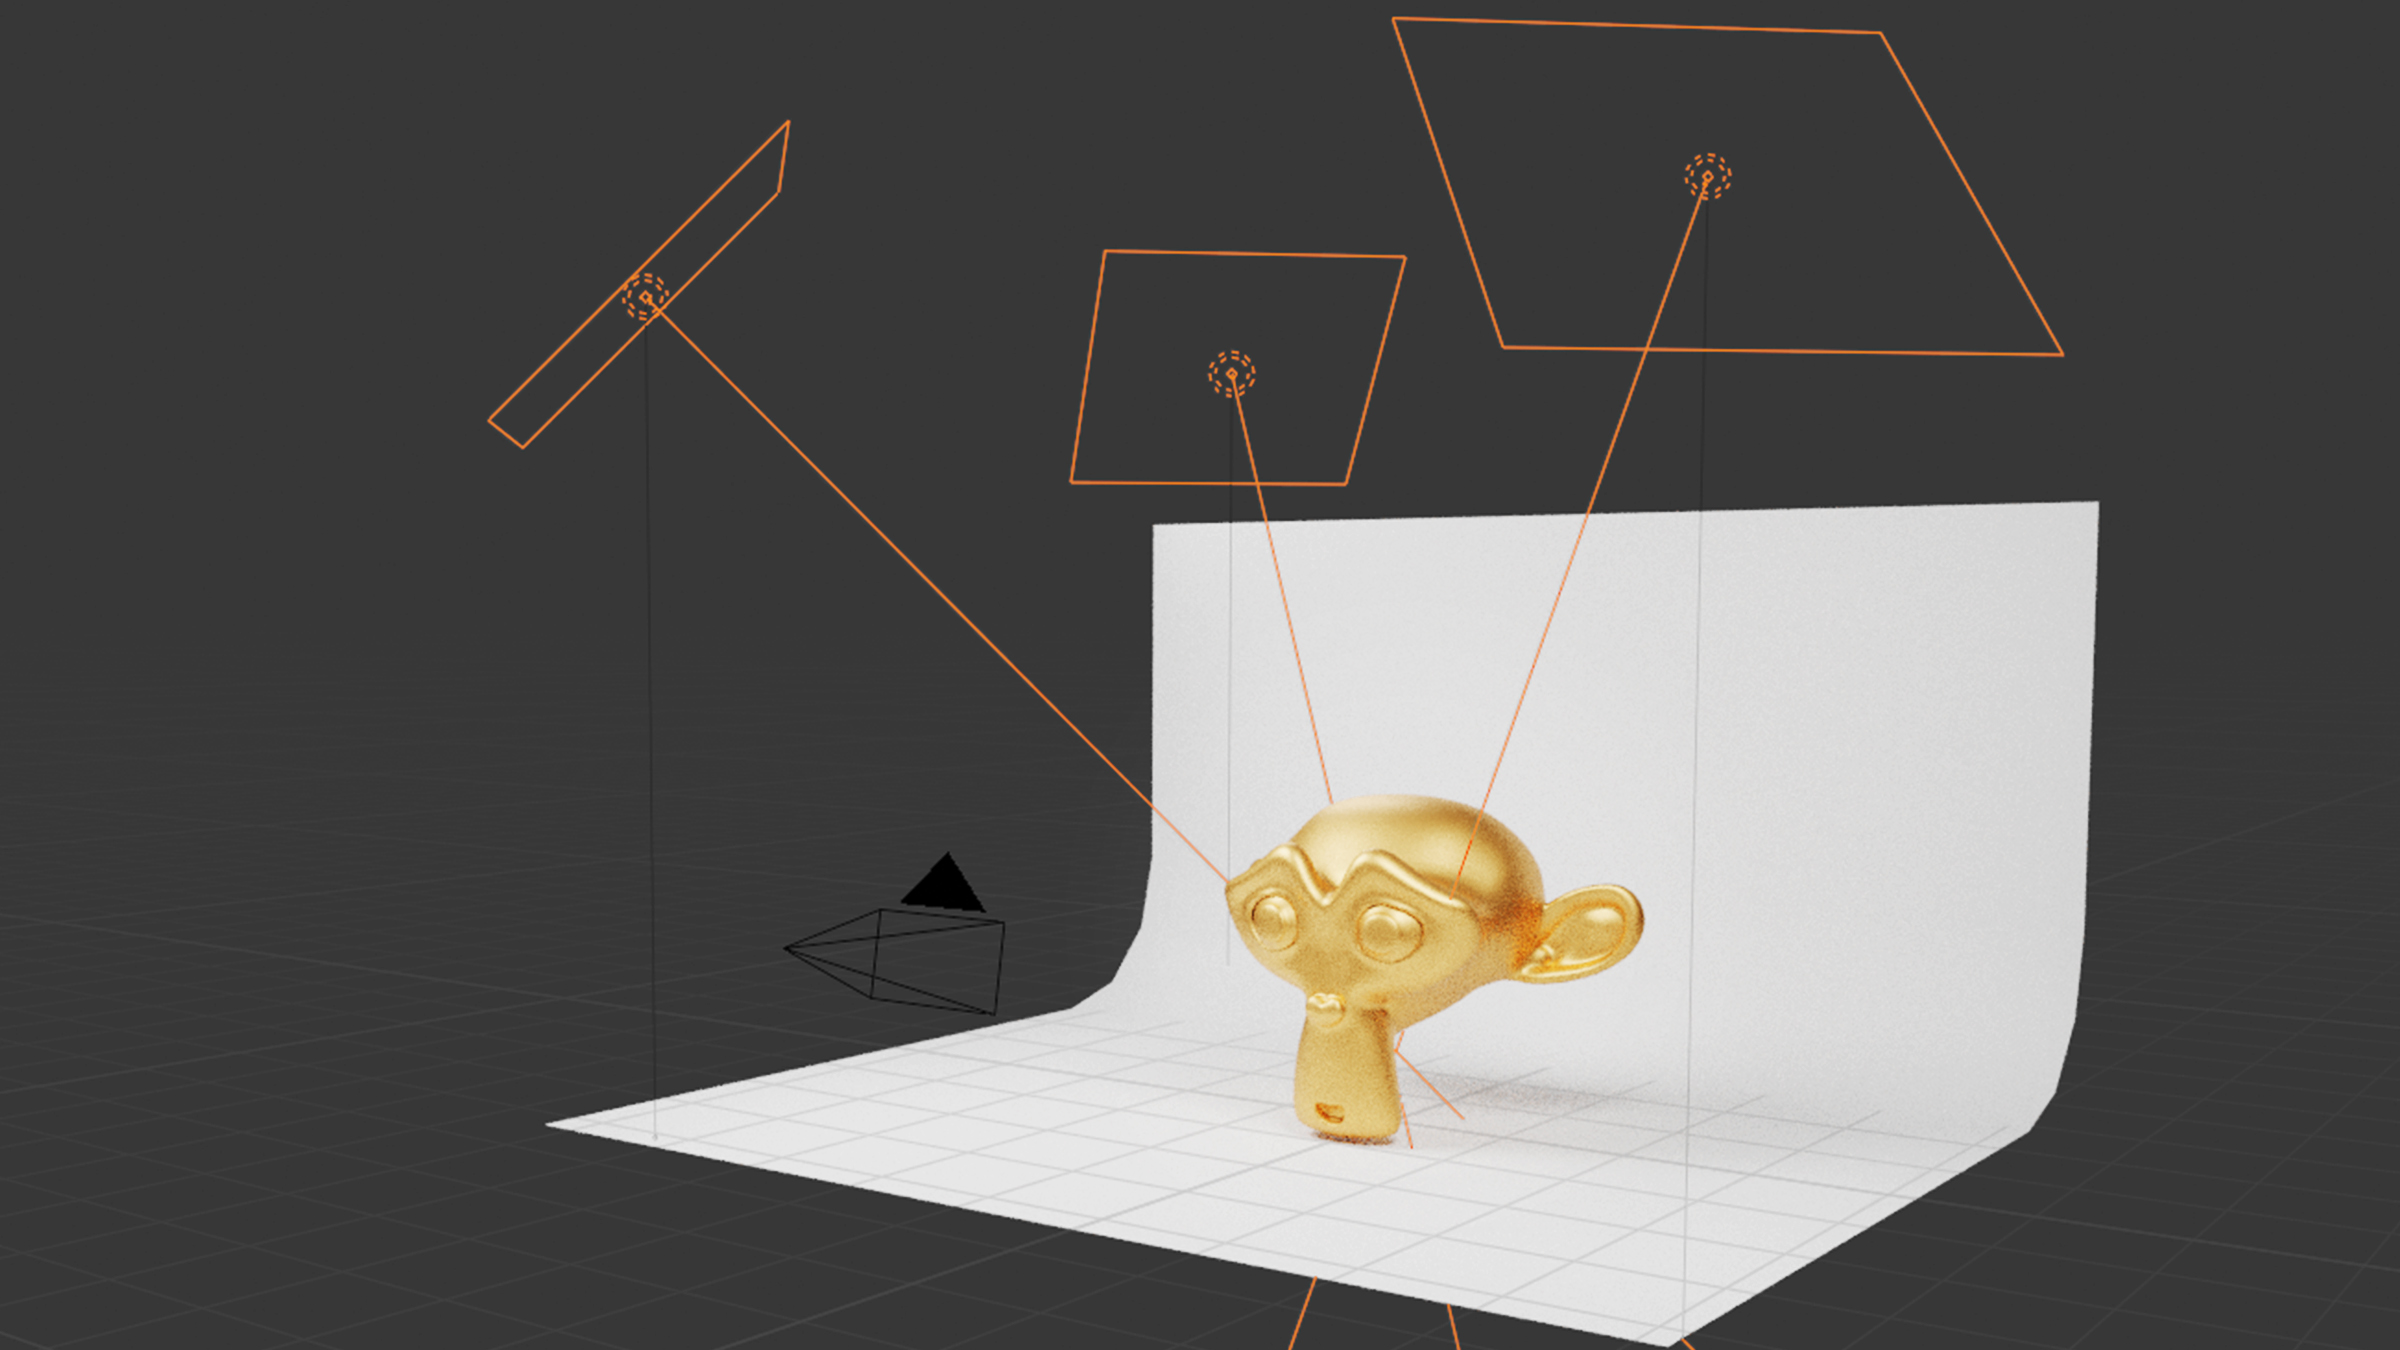 Blender Studio Lighting – How to make 3 Point Lighting Setup